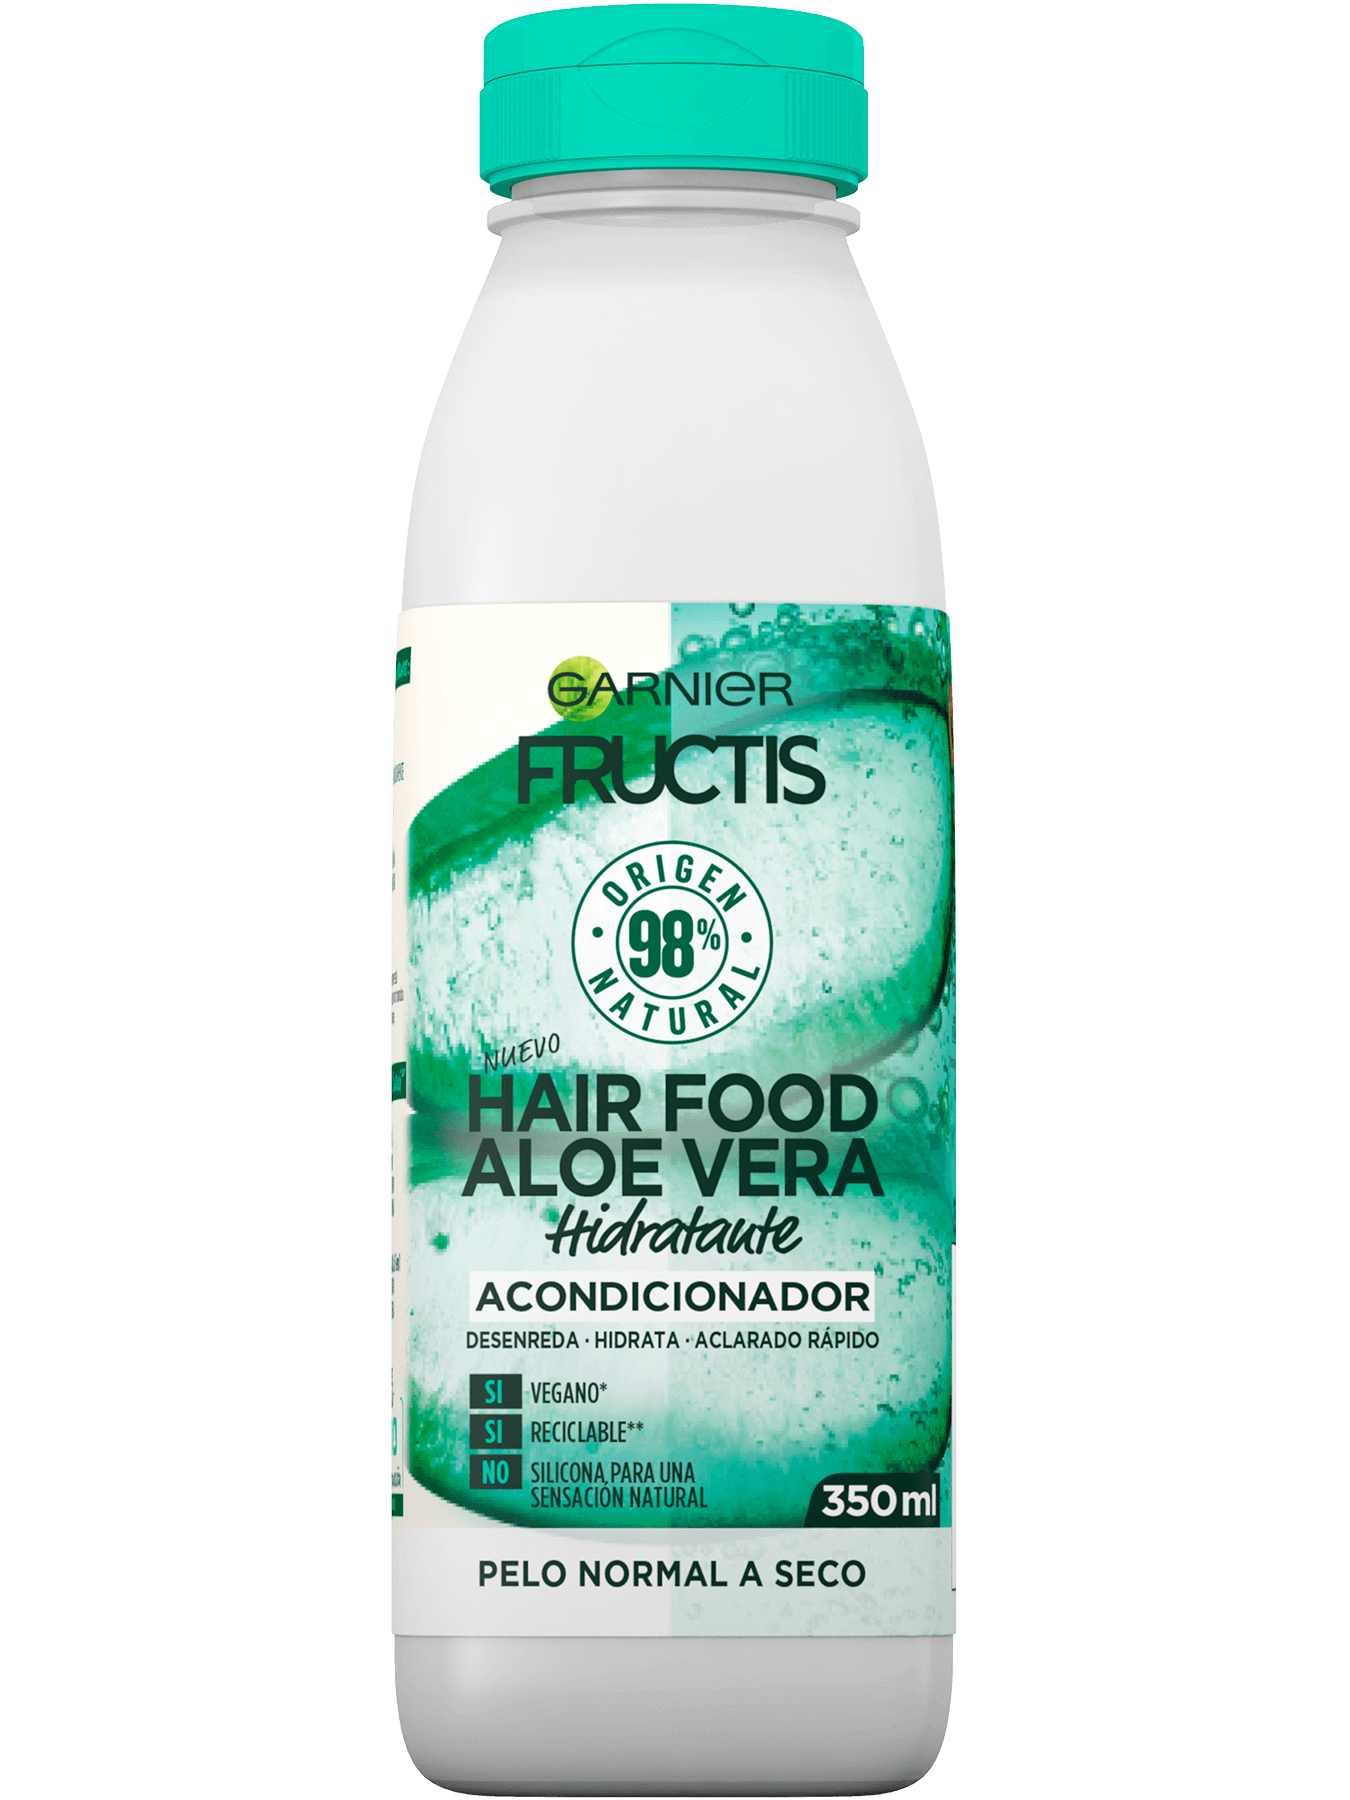 Acondicionador Fructis Hair Food Aloe Vera